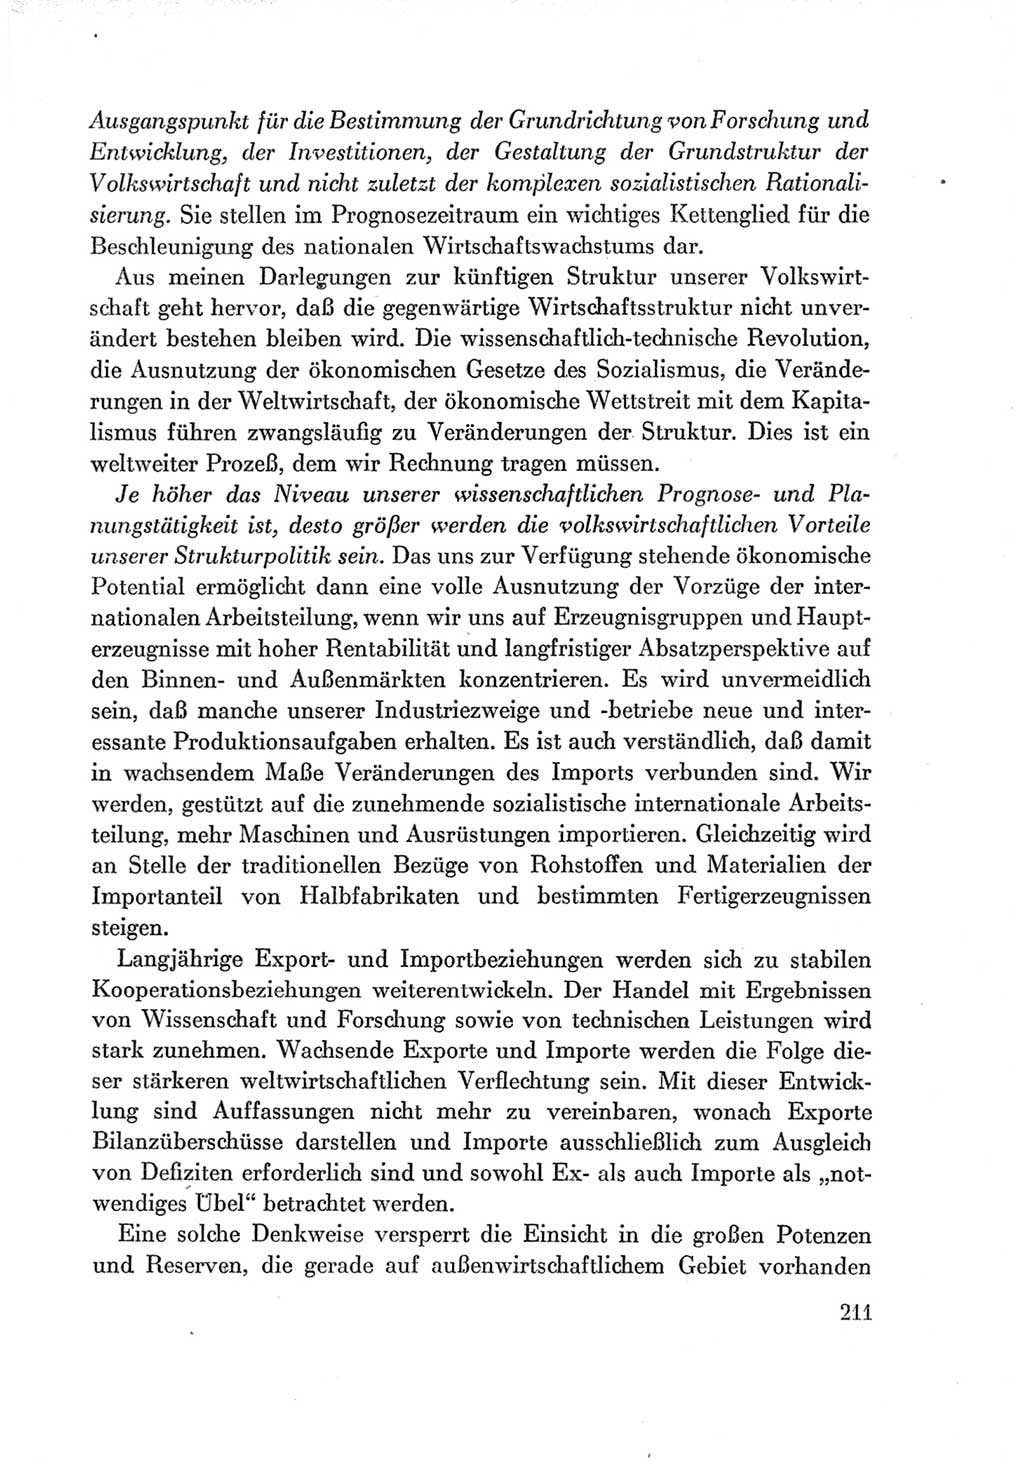 Protokoll der Verhandlungen des Ⅶ. Parteitages der Sozialistischen Einheitspartei Deutschlands (SED) [Deutsche Demokratische Republik (DDR)] 1967, Band Ⅰ, Seite 211 (Prot. Verh. Ⅶ. PT SED DDR 1967, Bd. Ⅰ, S. 211)